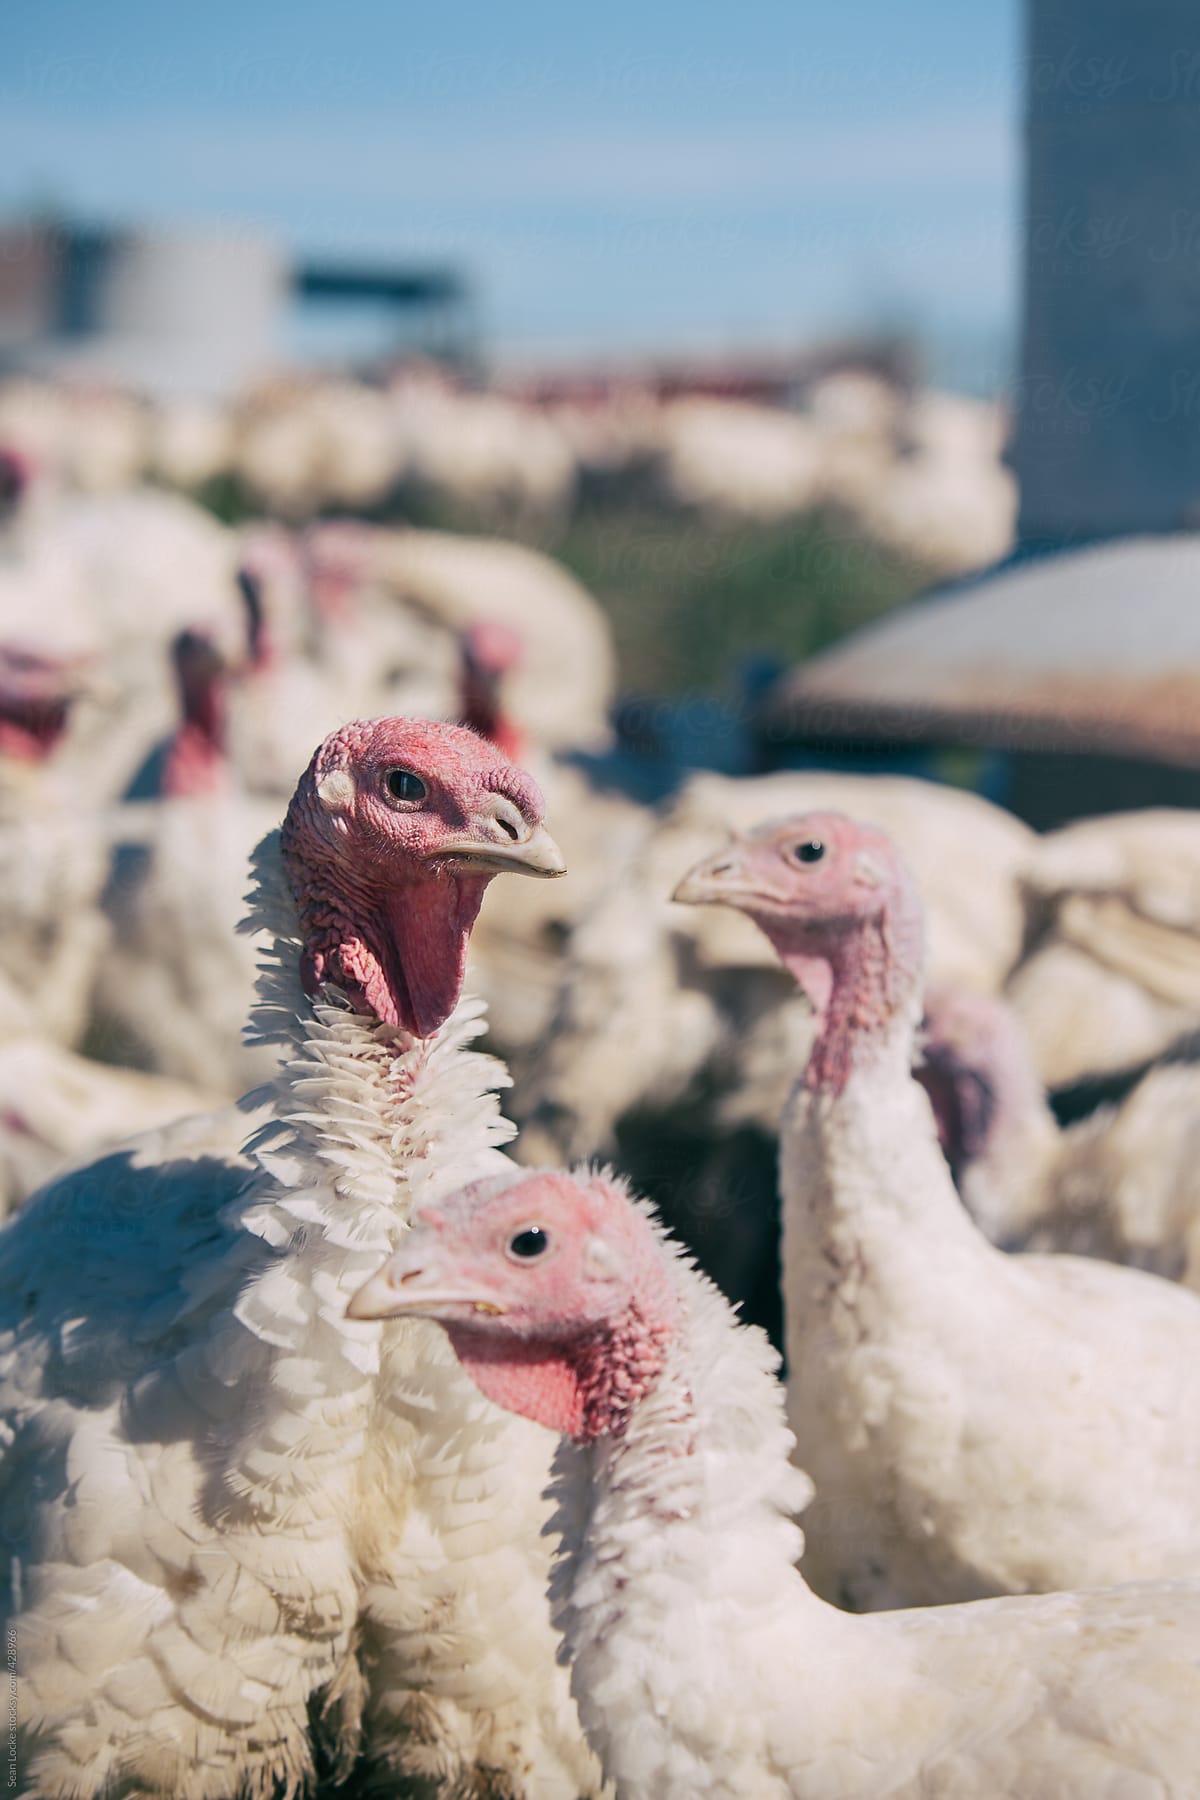 Farm: Group Of Turkeys Standing By Feeding Trough